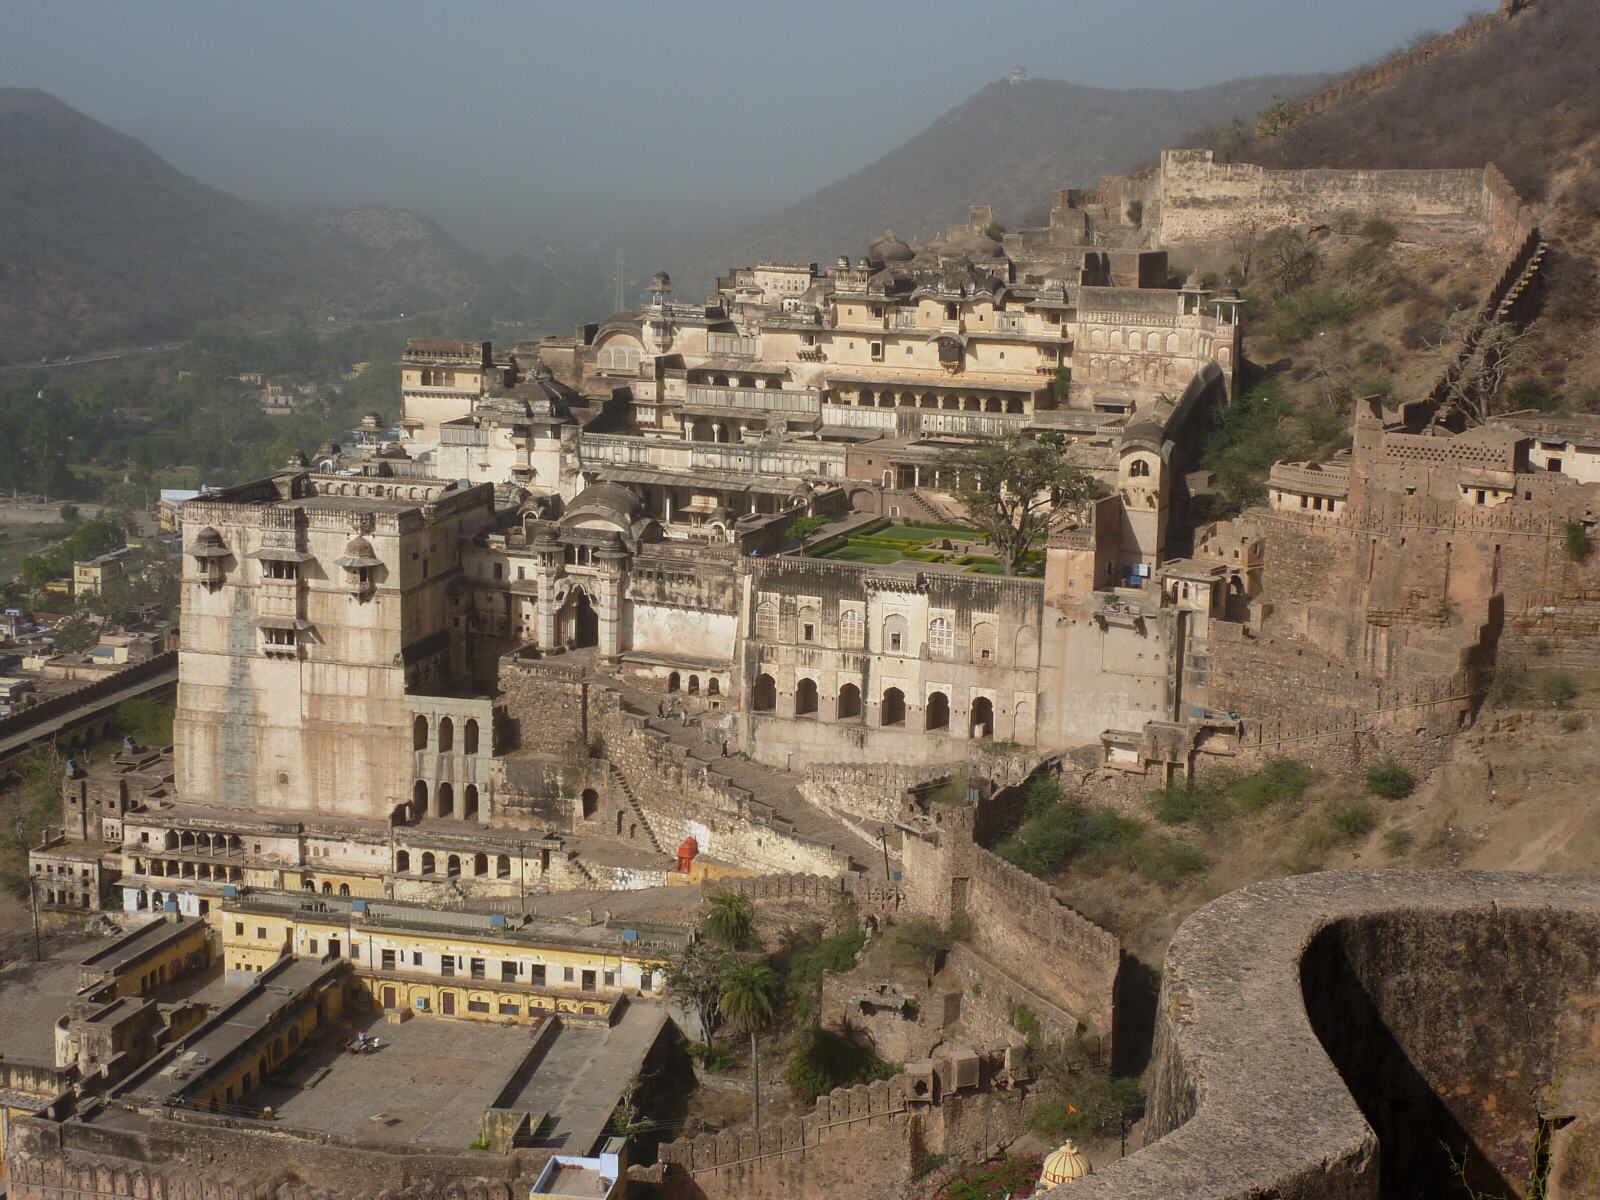 The fort and palace at Bundi, Rajasthan, India